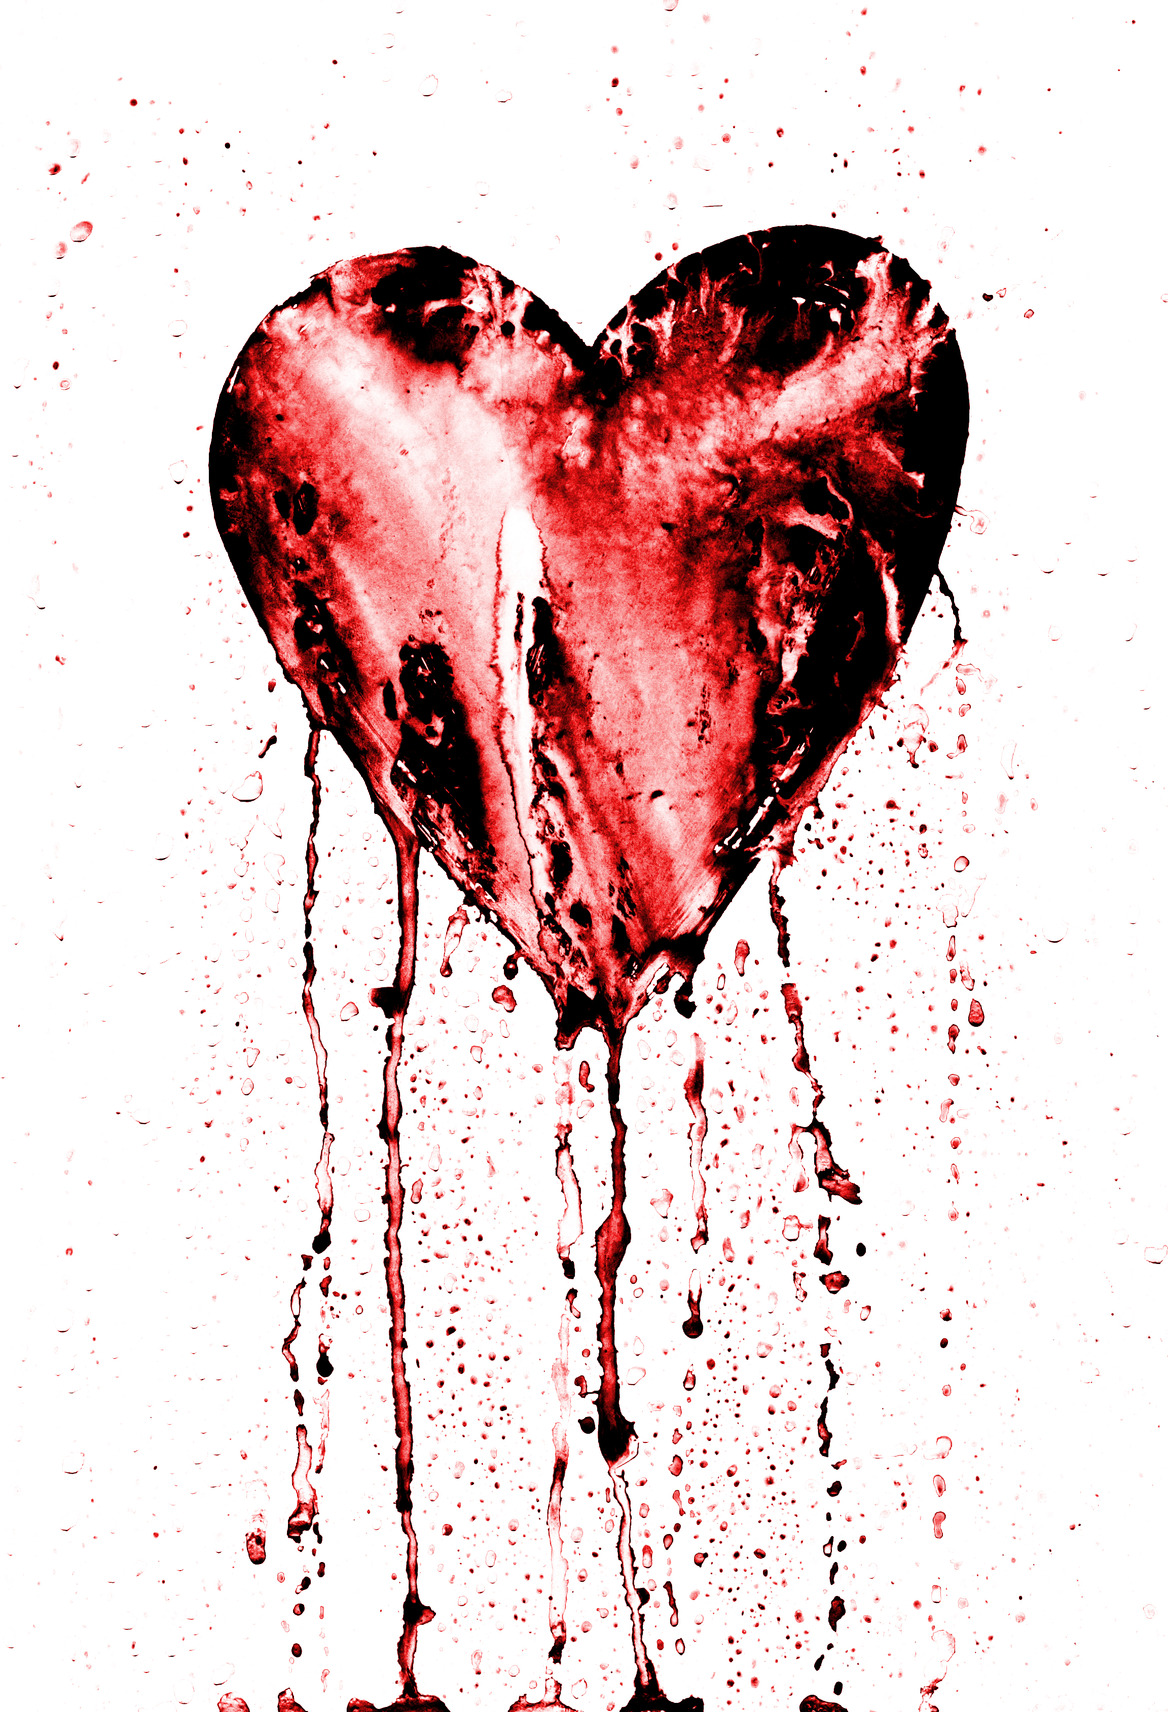 Be Still My Bleeding Heart! Q&A on the HeartBleed Bug